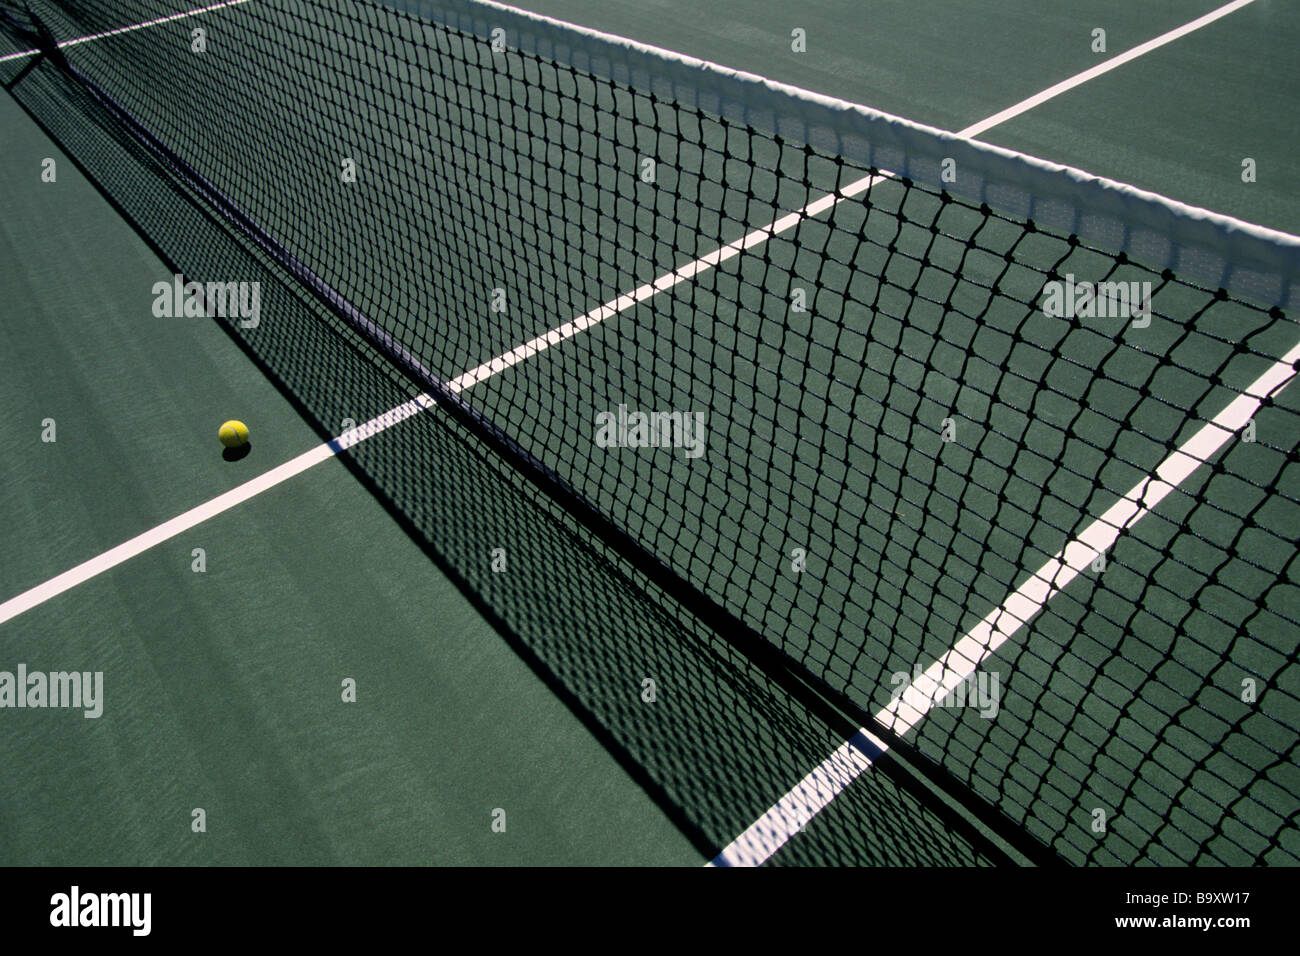 Filet de tennis et la balle Banque D'Images